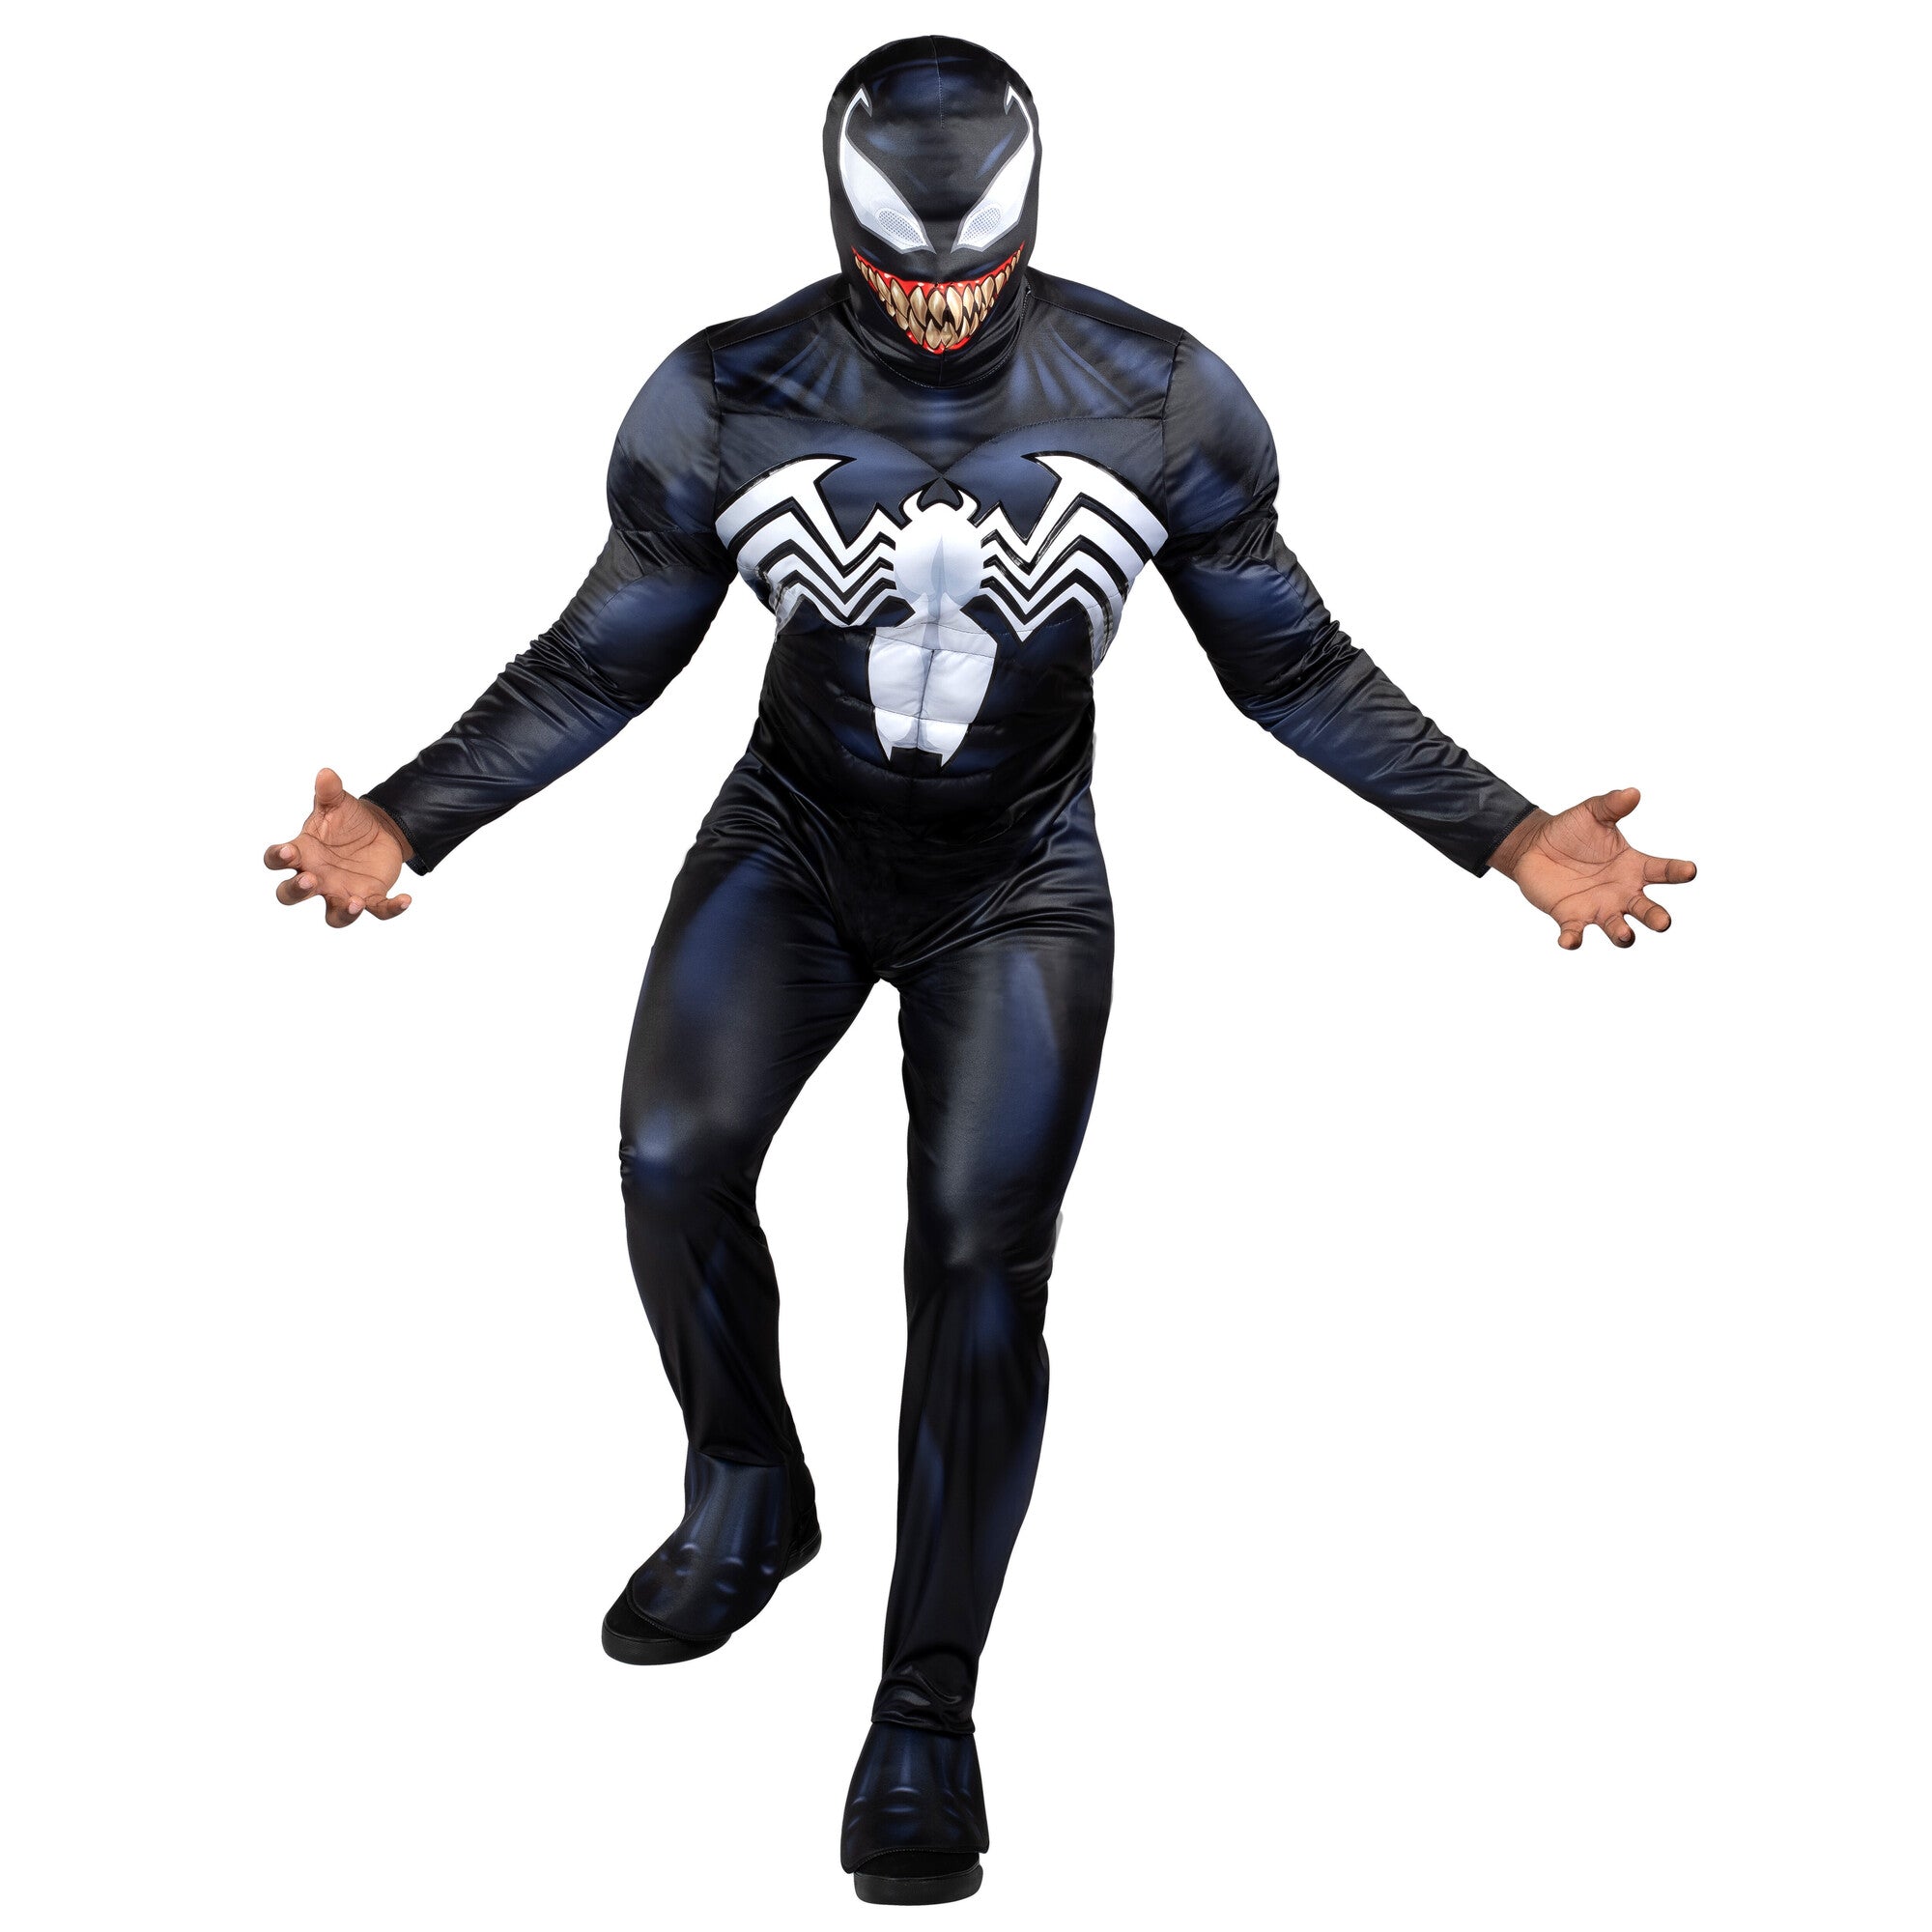 MARVEL'S SPIDER-MAN QUALUX COSTUME (ADULTE) - Combinaison en